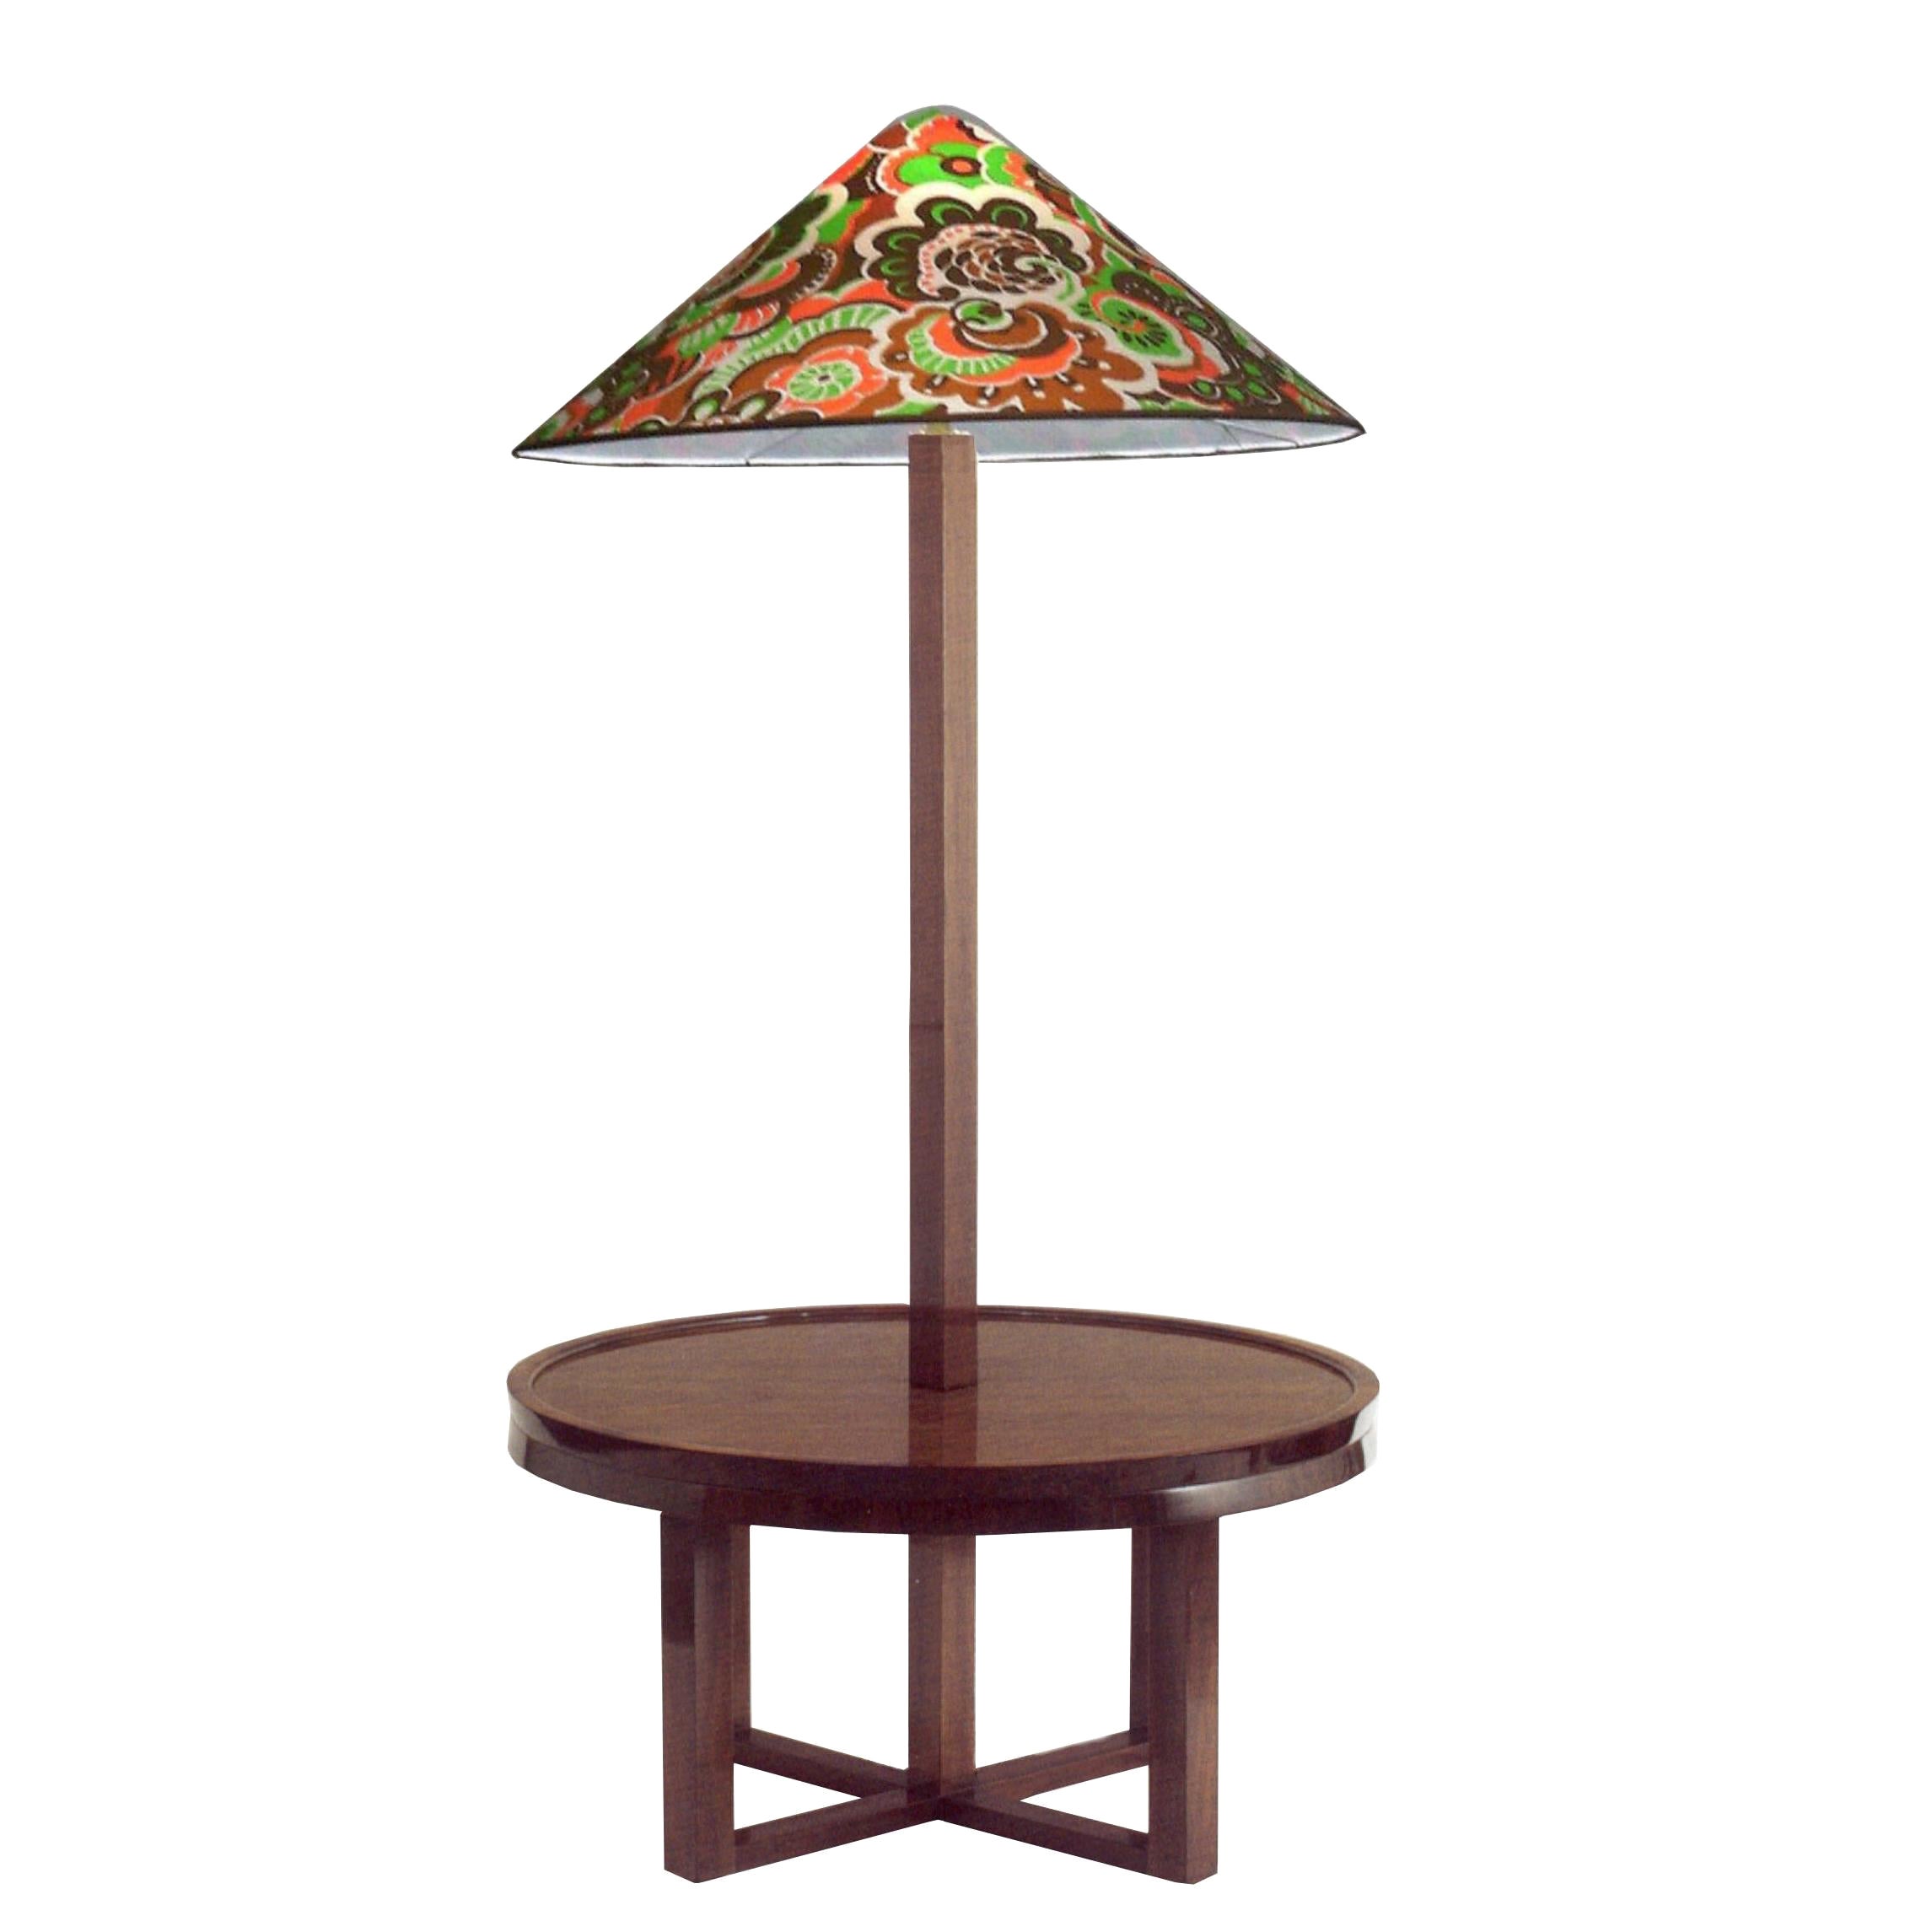 Josef Hoffmann Wiener Werkstaette Floor-Table-Lamp Re-Edition, Beechwood